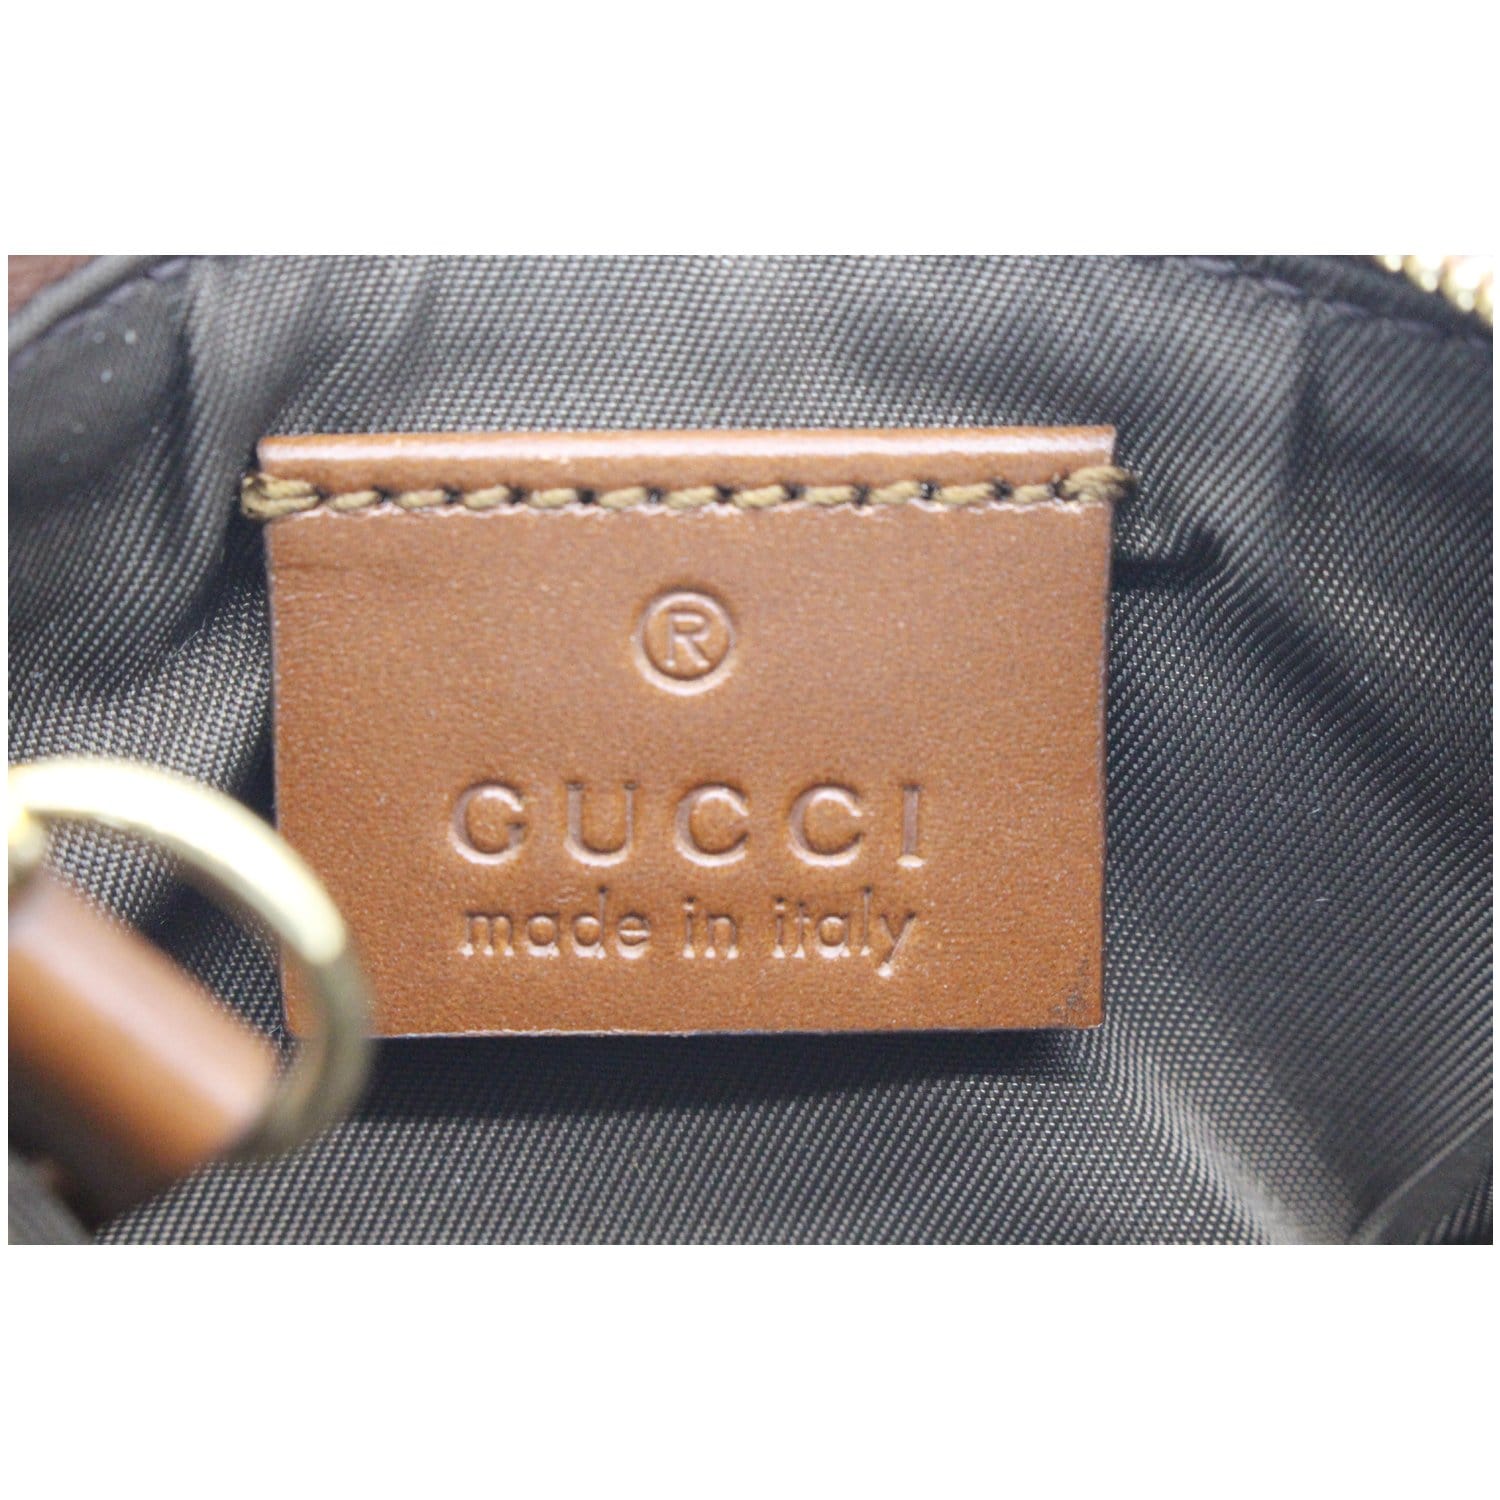 Gucci GG Supreme key pouch - 447964KLQHG8526